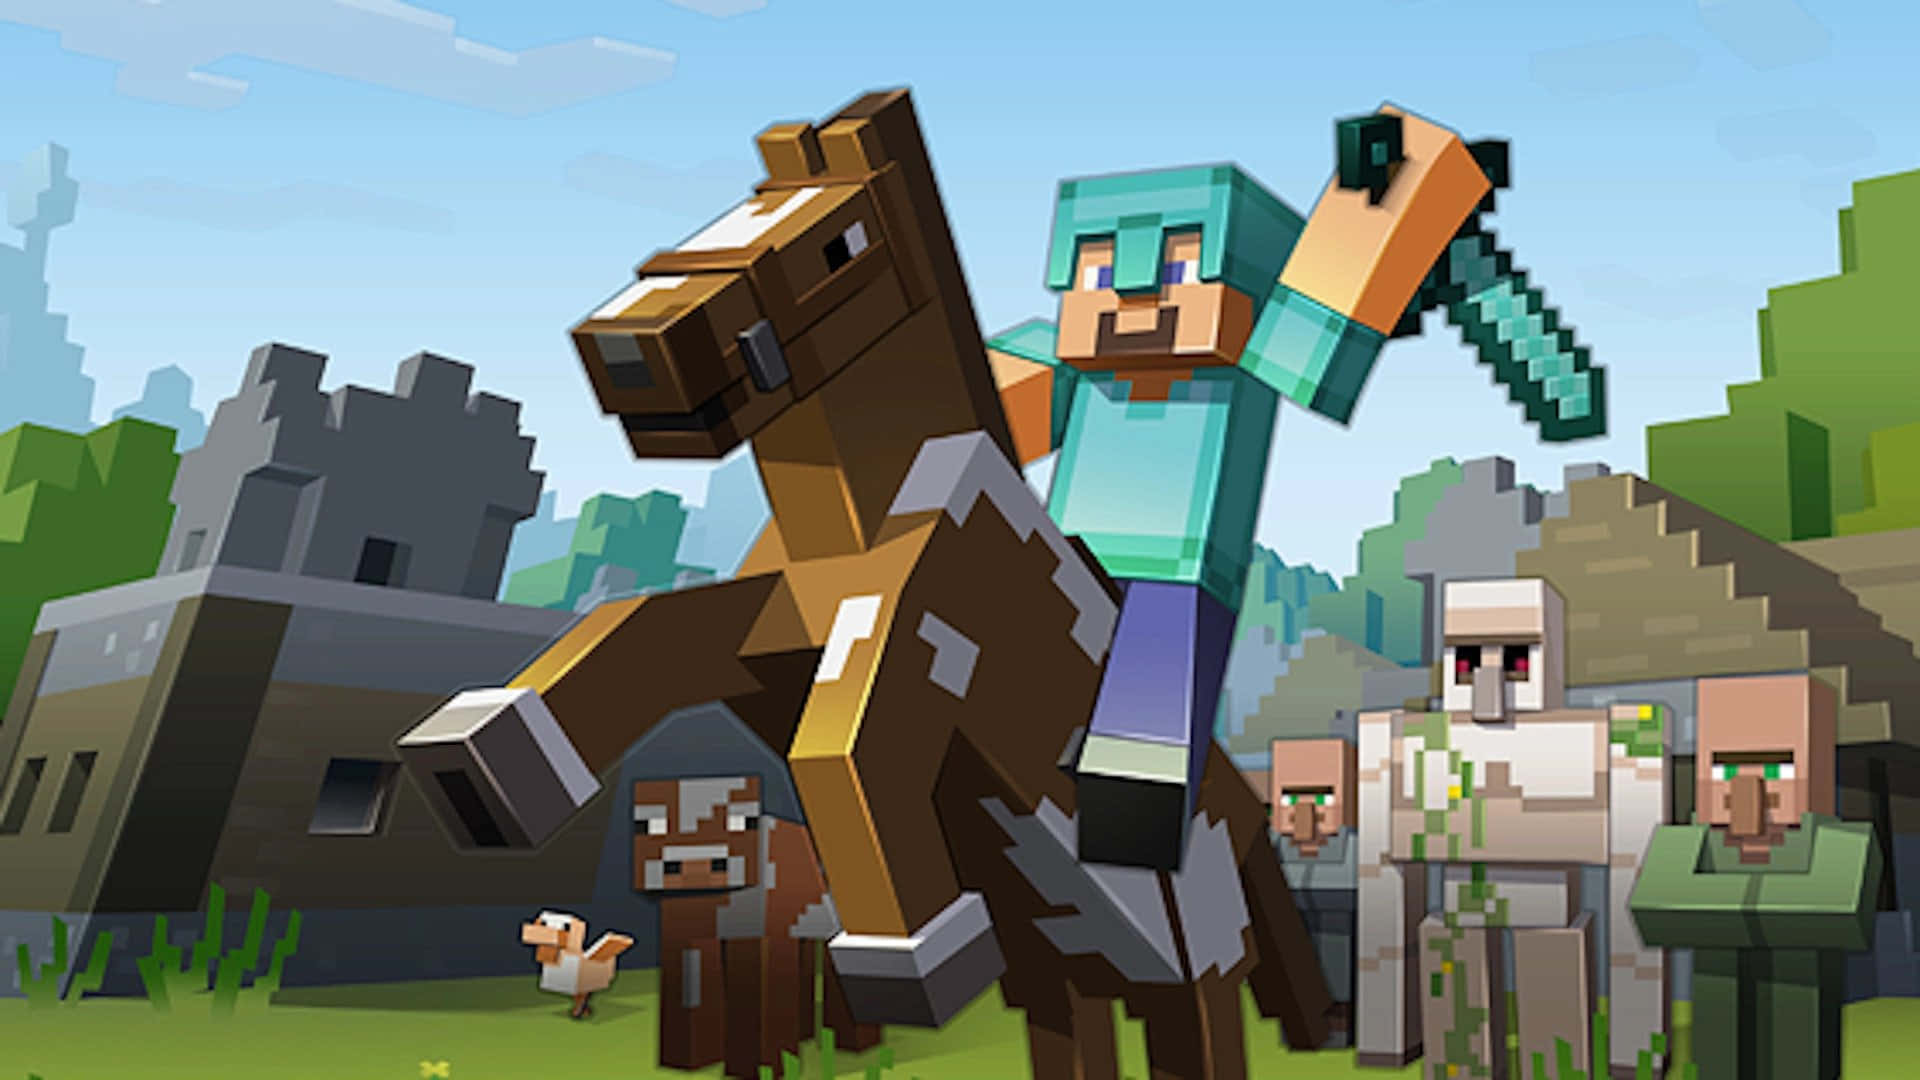 Imagende Un Caballero De Minecraft Montando Un Caballo